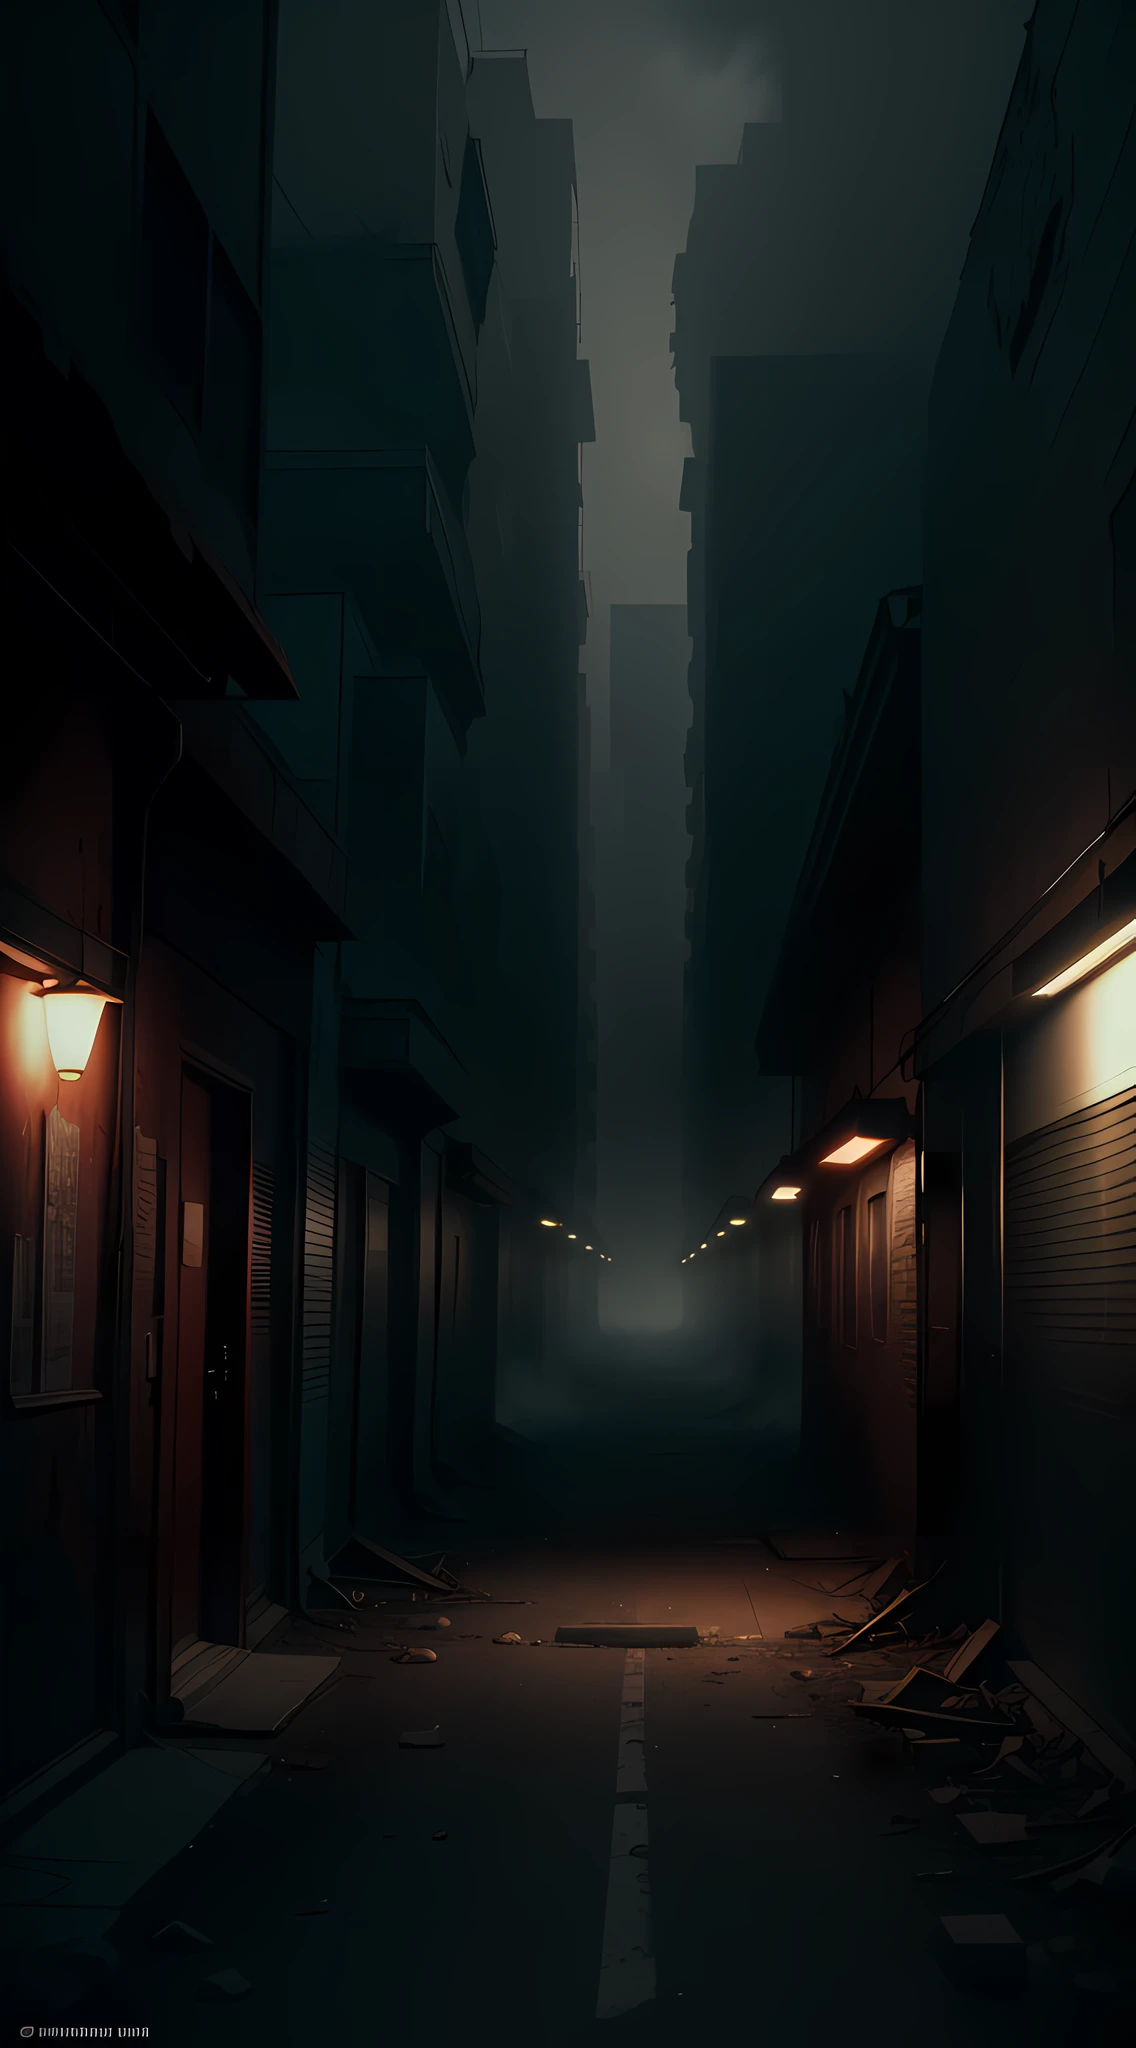 สร้างความละเอียดสูง (8k) ภาพที่แสดงถึงเมือง Centralia ที่ถูกทิ้งร้างในสหรัฐอเมริกา, ด้วยองค์ประกอบที่ได้รับแรงบันดาลใจจากจักรวาลของหนัง Silent Hill. เพิ่มหมอกหนาทึบและองค์ประกอบเถ้าลอย, สร้างบรรยากาศที่มืดมนและเหนือจริง. ใช้จานสีที่ไม่อิ่มตัว, เน้นเฉดสีแดงและน้ำตาล, เพื่อปลุกเร้าความรู้สึกหวาดกลัวและความลึกลับที่มีอยู่ใน Silent Hill."